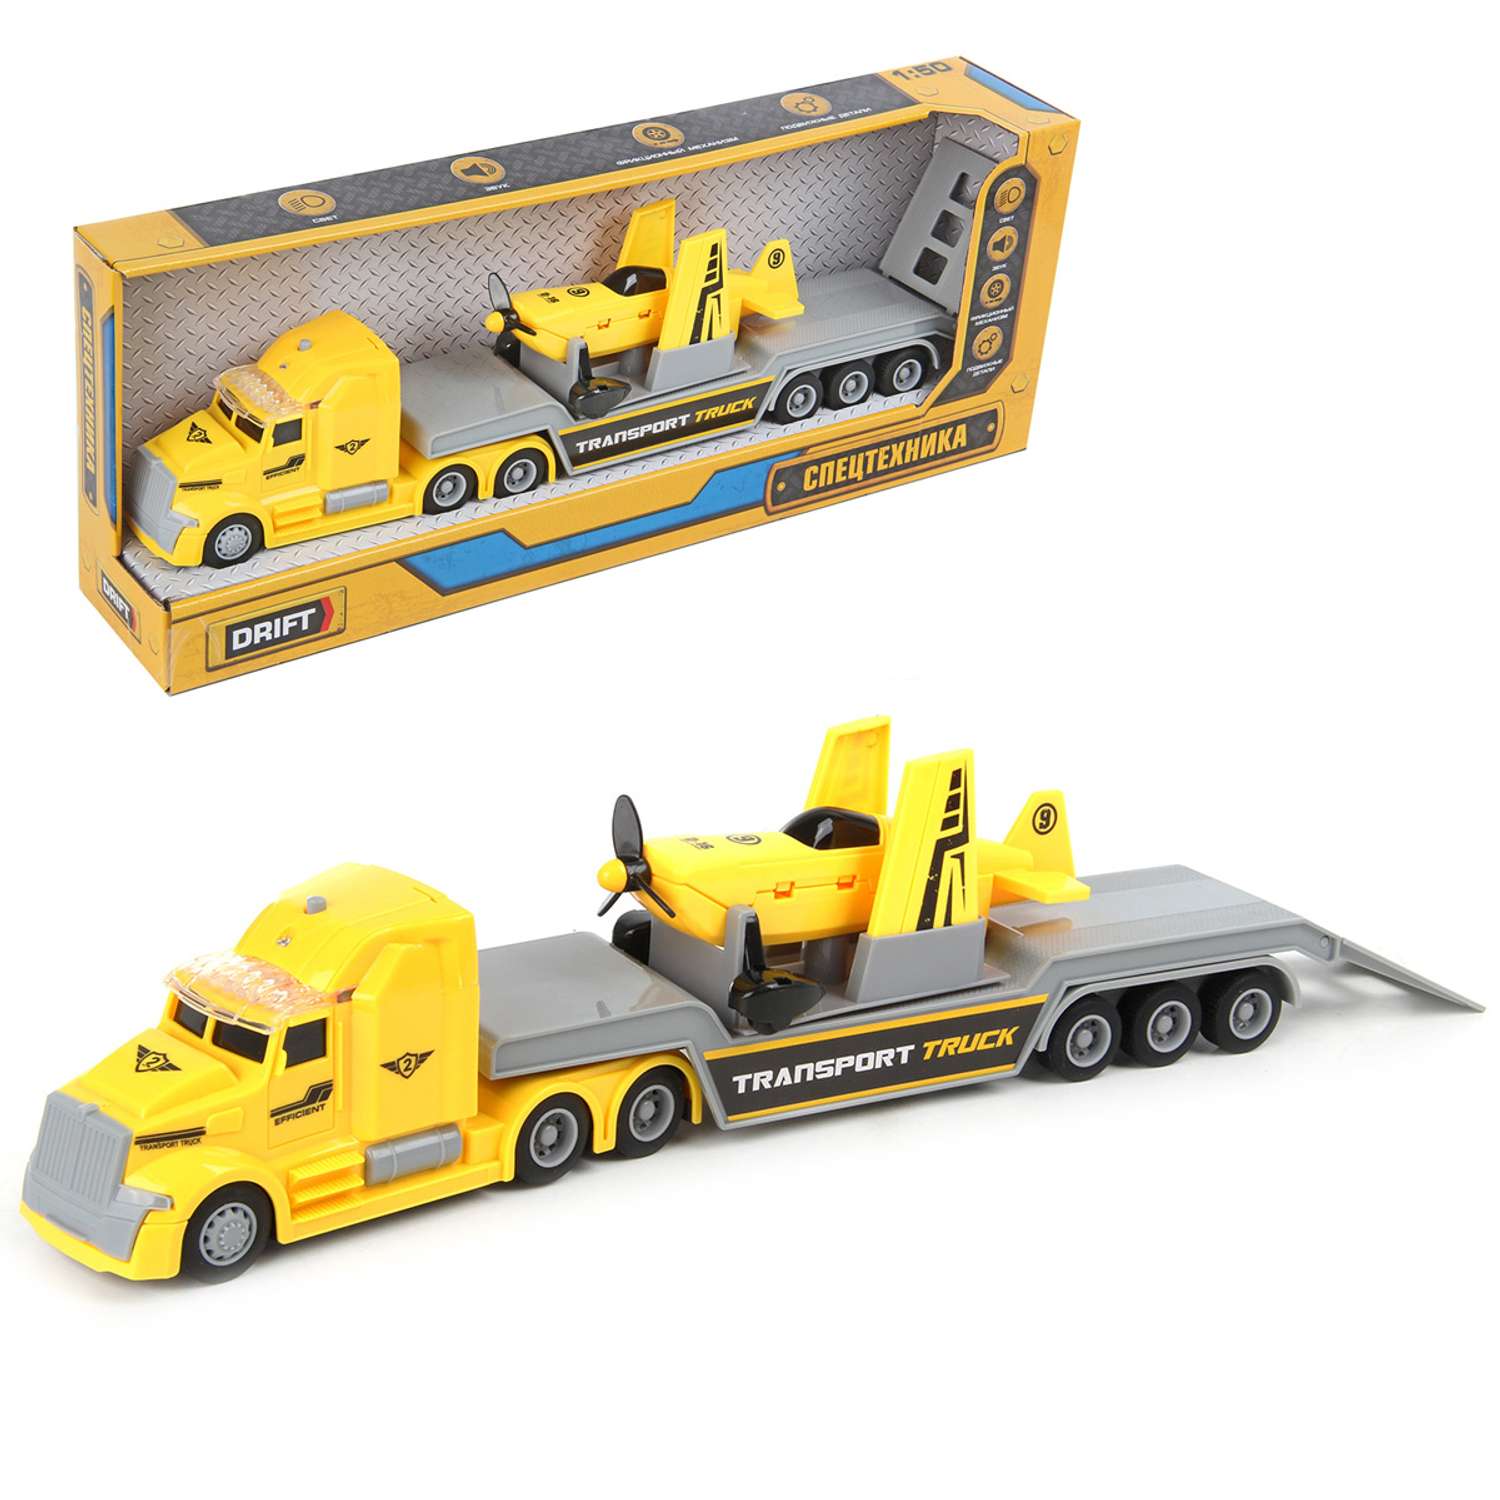 Набор Drift Автовоз с самолетом Yellow Transport Truck 1:50 фрикционный механизм 82221 - фото 1